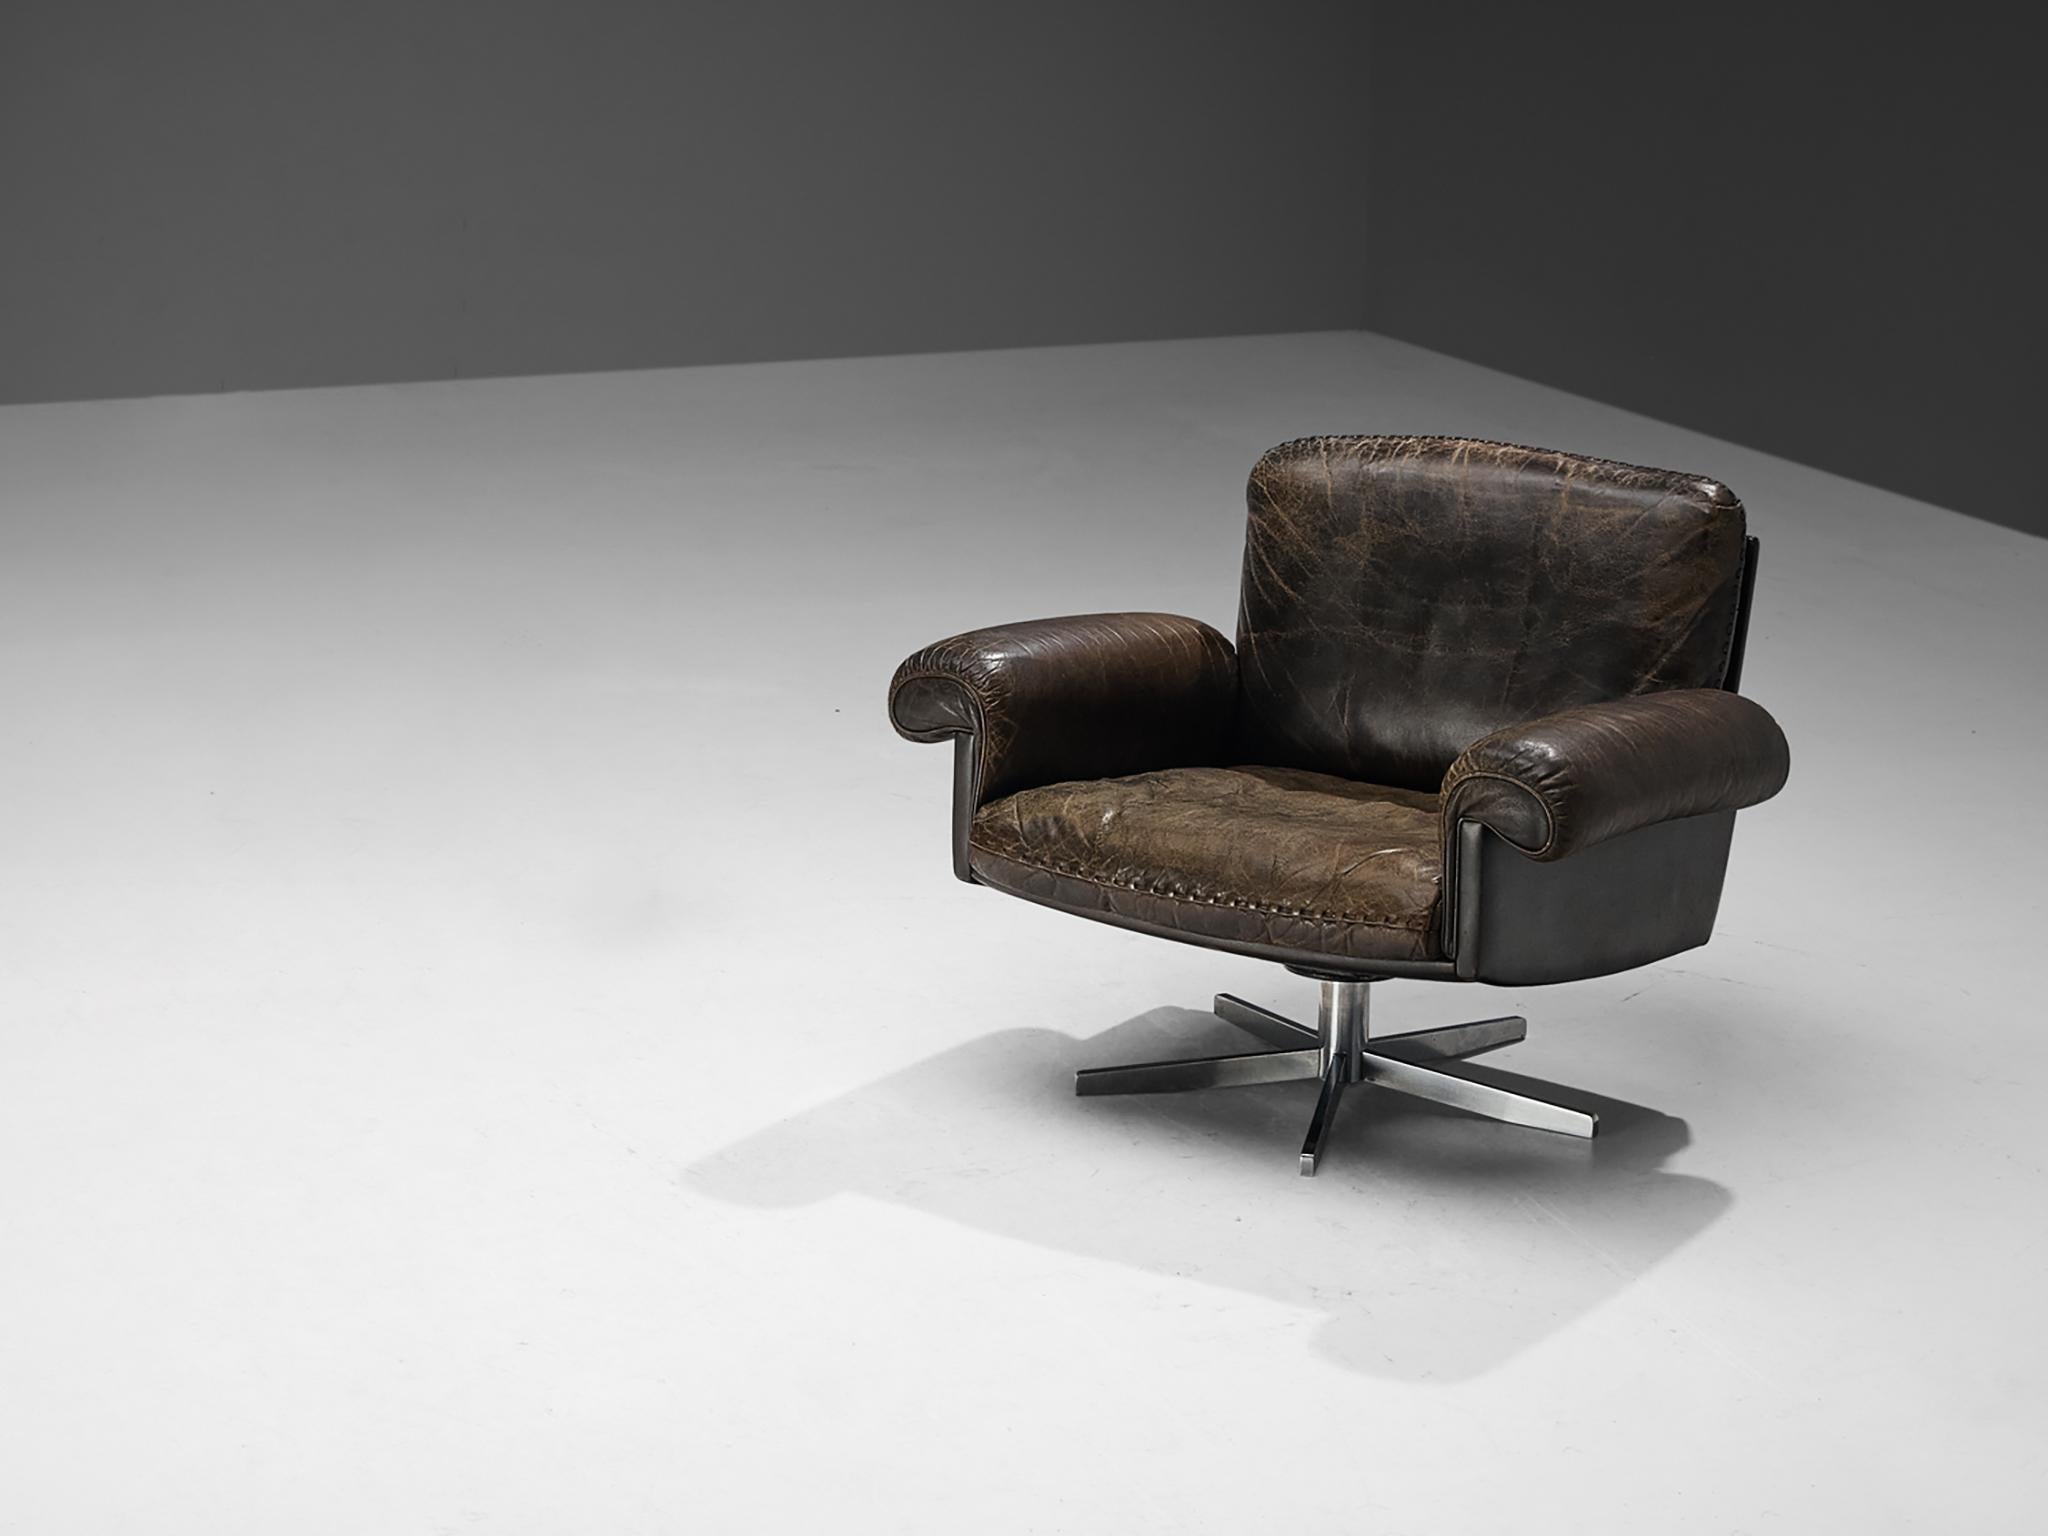 De Sede, chaise longue modèle 'DS-31', cuir, métal chromé, Suisse, années 1970.

Une conception de De Sede qui se caractérise par une construction simple mais majestueuse. L'assise profonde et les accoudoirs incurvés garantissent une expérience